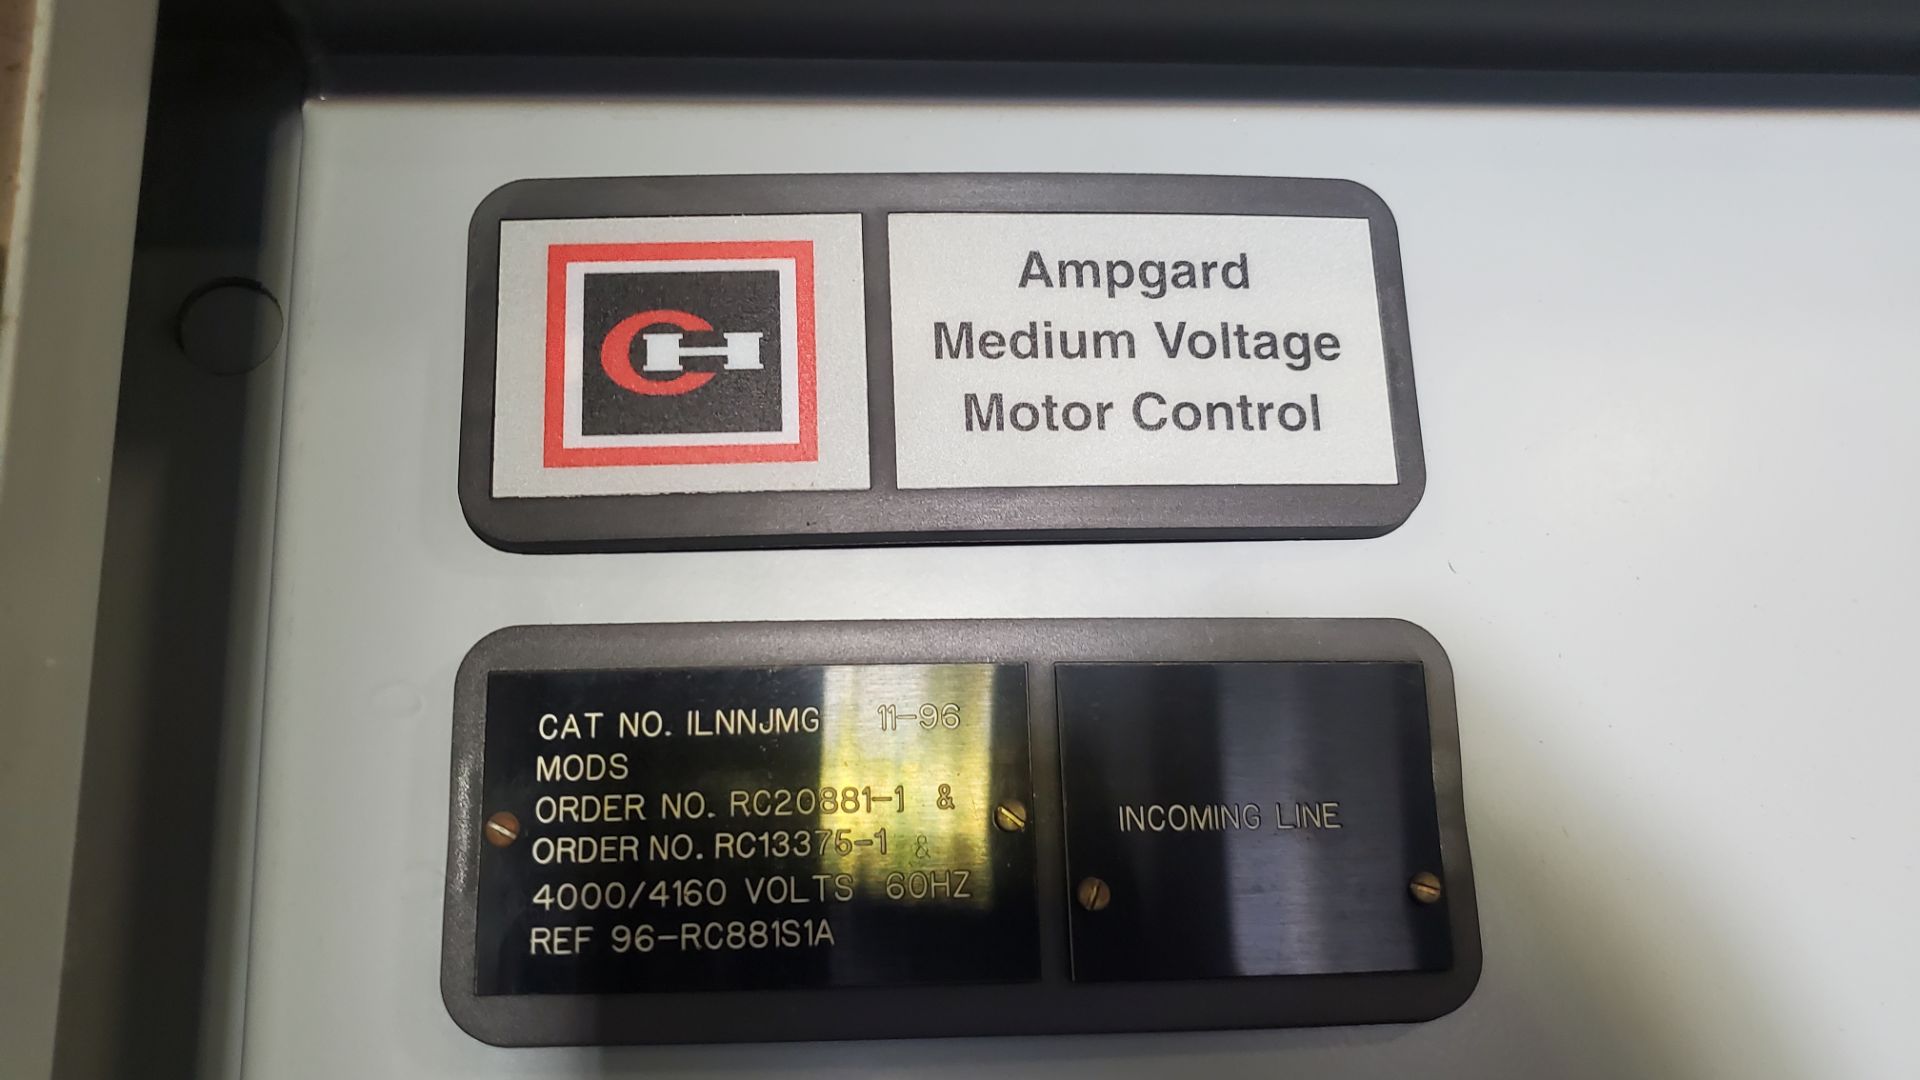 Amp Guard Medium Voltage Motor Control Cutler- Hammer Cat. No. V60ZJ4G 1500hp Service Factor 1.00 - Image 3 of 10